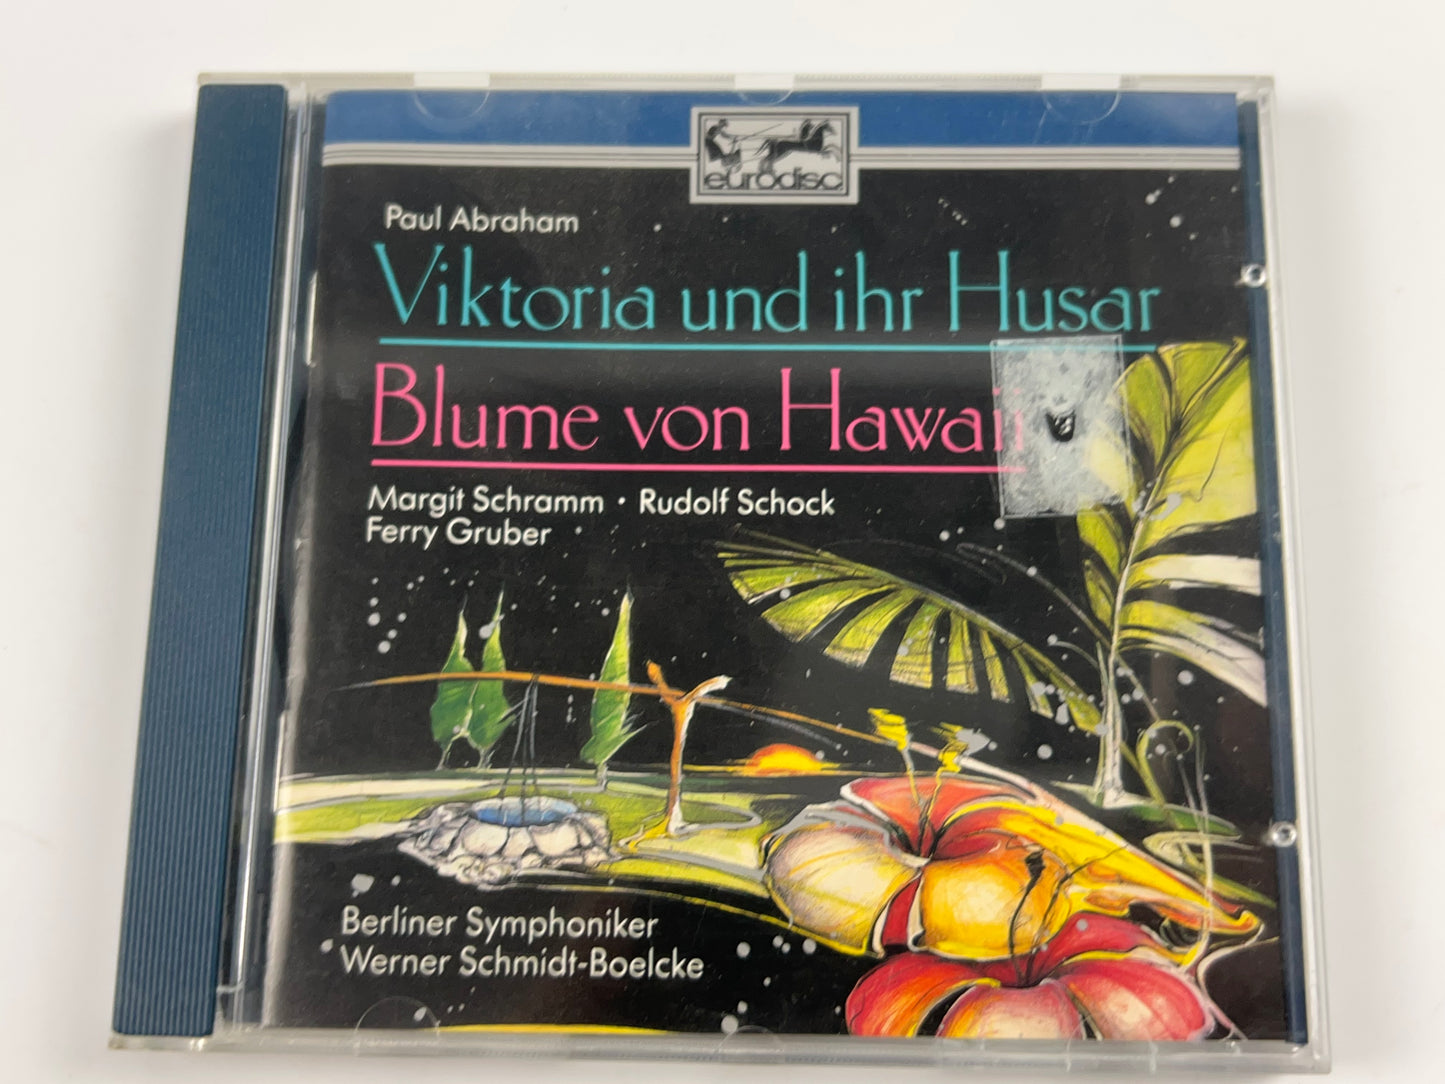 Berliner Symphoniker , Werner Schmidt-Boelcke - CD (1990)